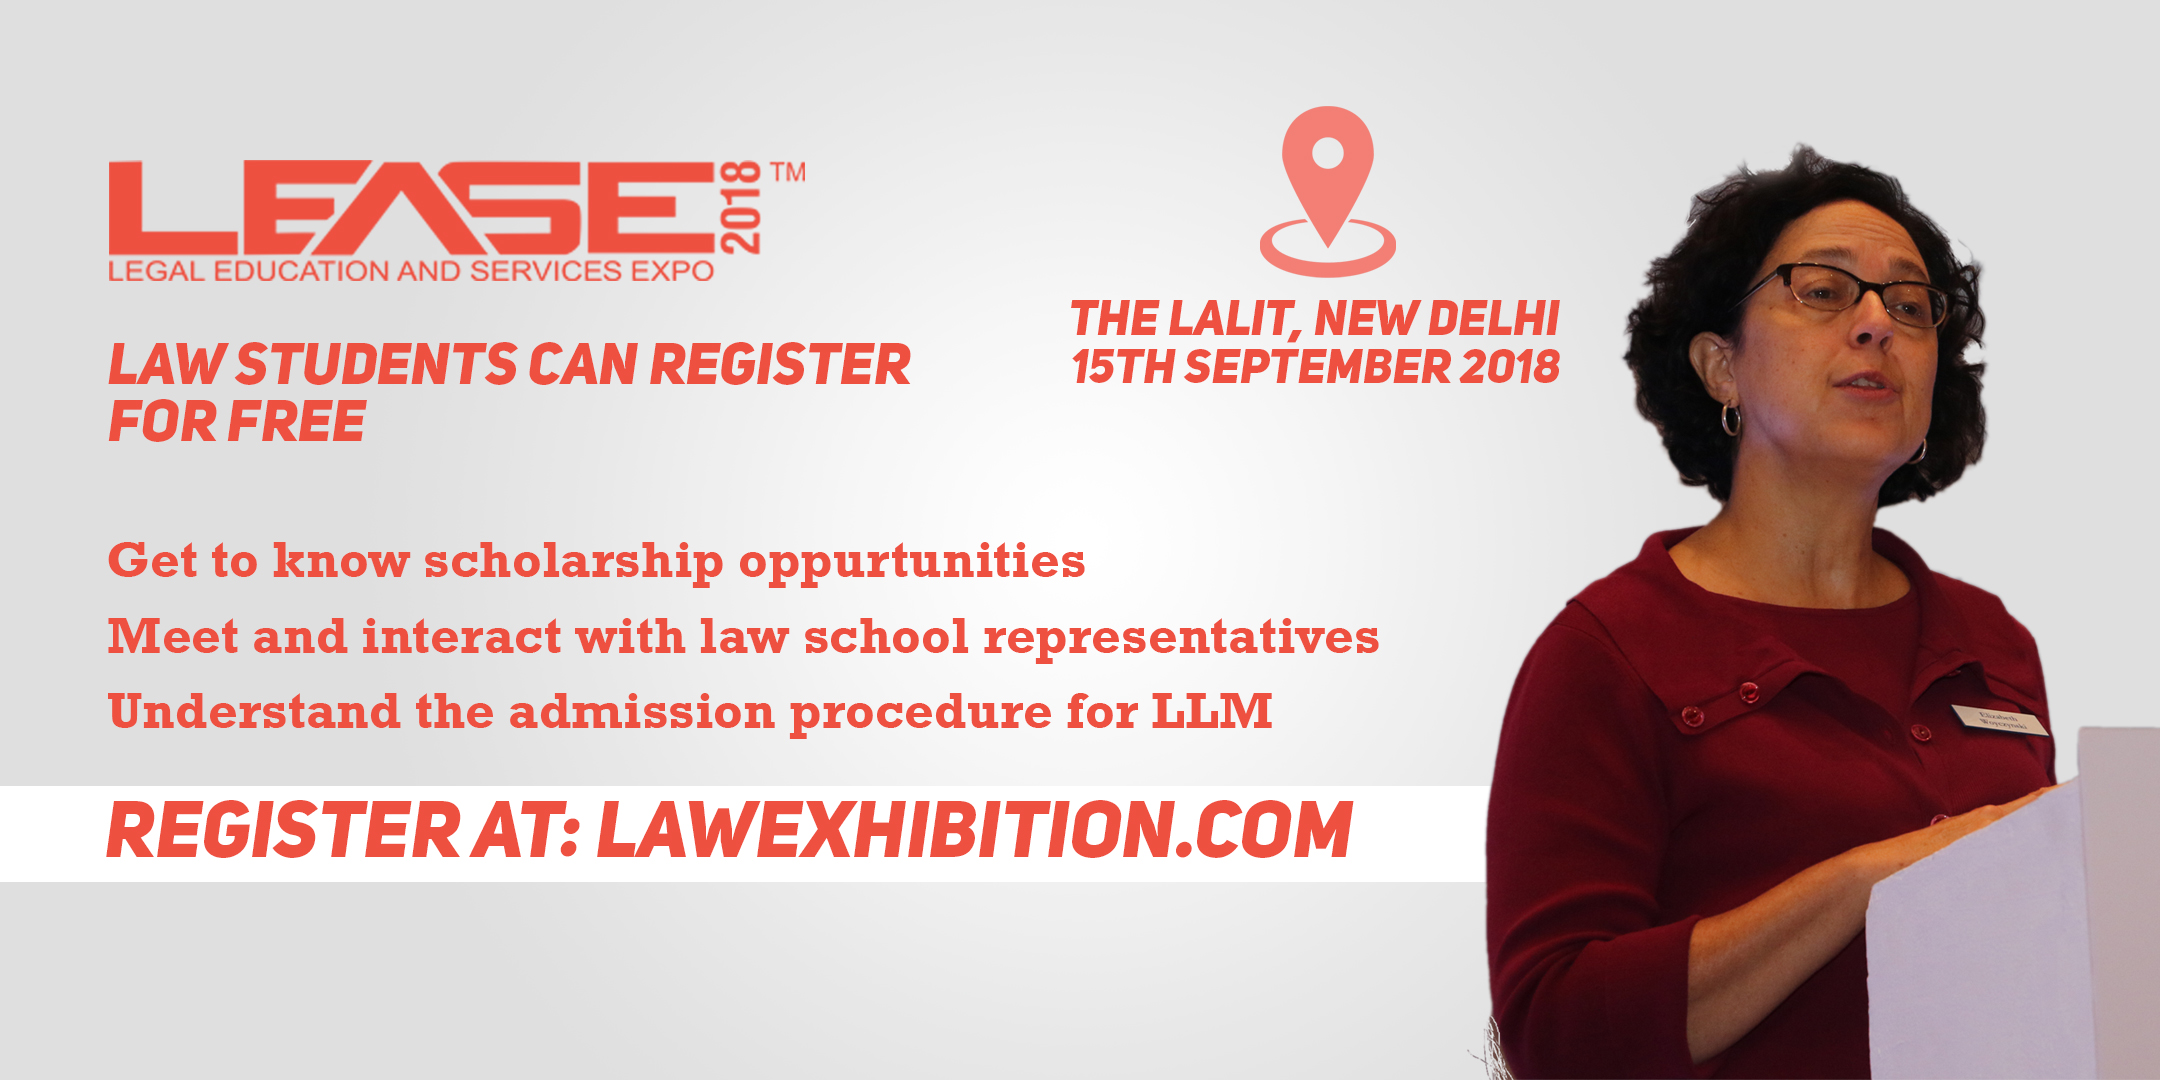 LEASE 2018 (Legal Education And Services Expo) New Delhi, New Delhi, Delhi, India